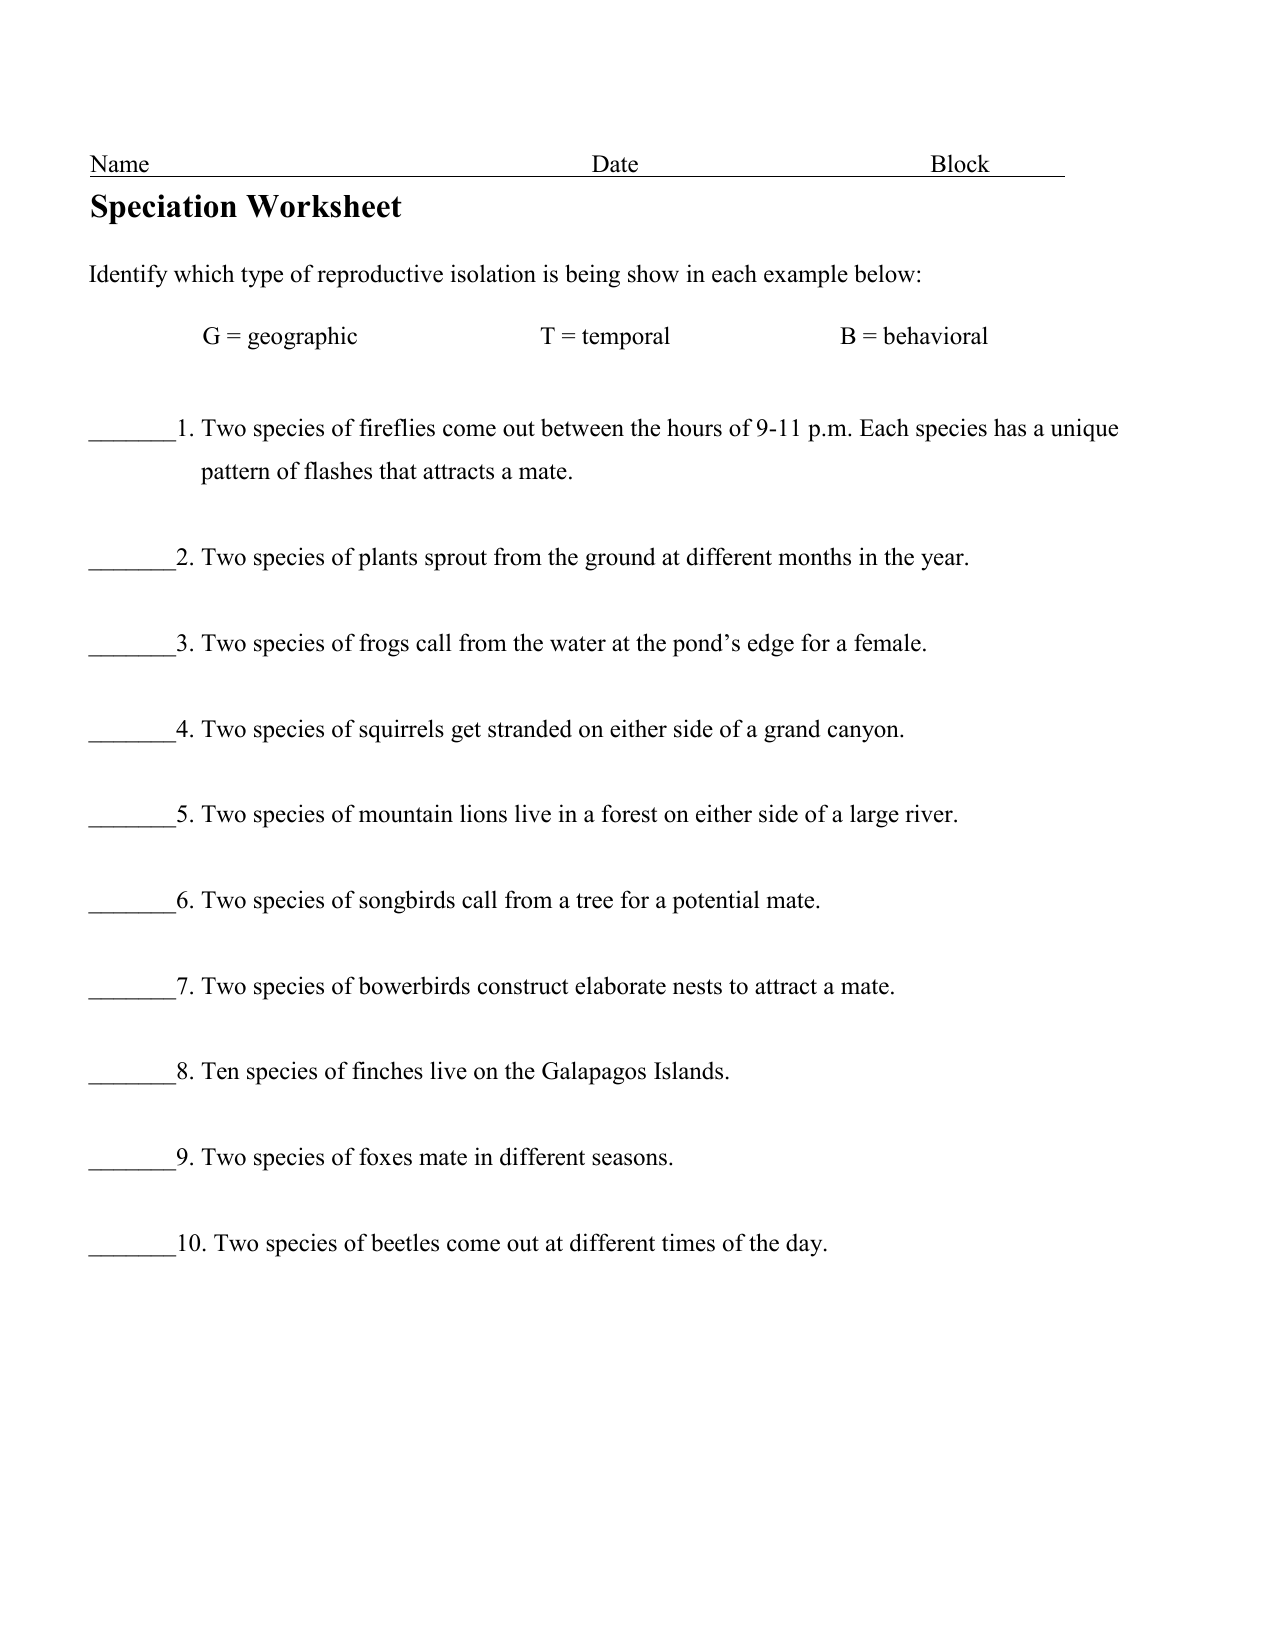 42-speciation-worksheet-answer-key-worksheet-master